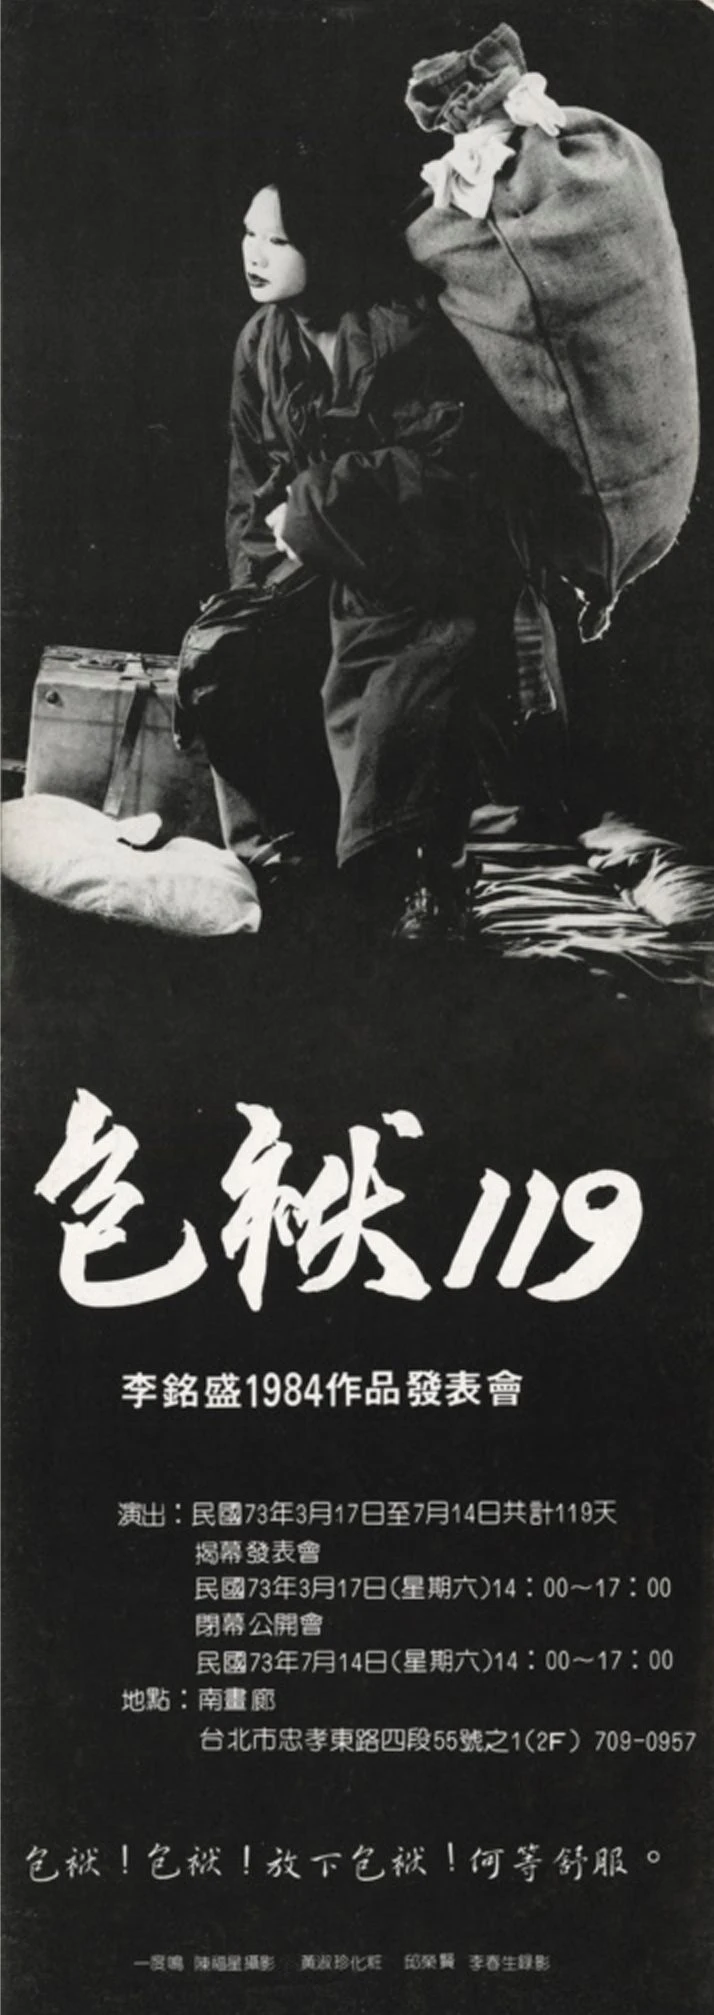 李銘盛，《包袱119》海報文宣，1984；陳福鑫攝影，王耿瑜提供-圖片